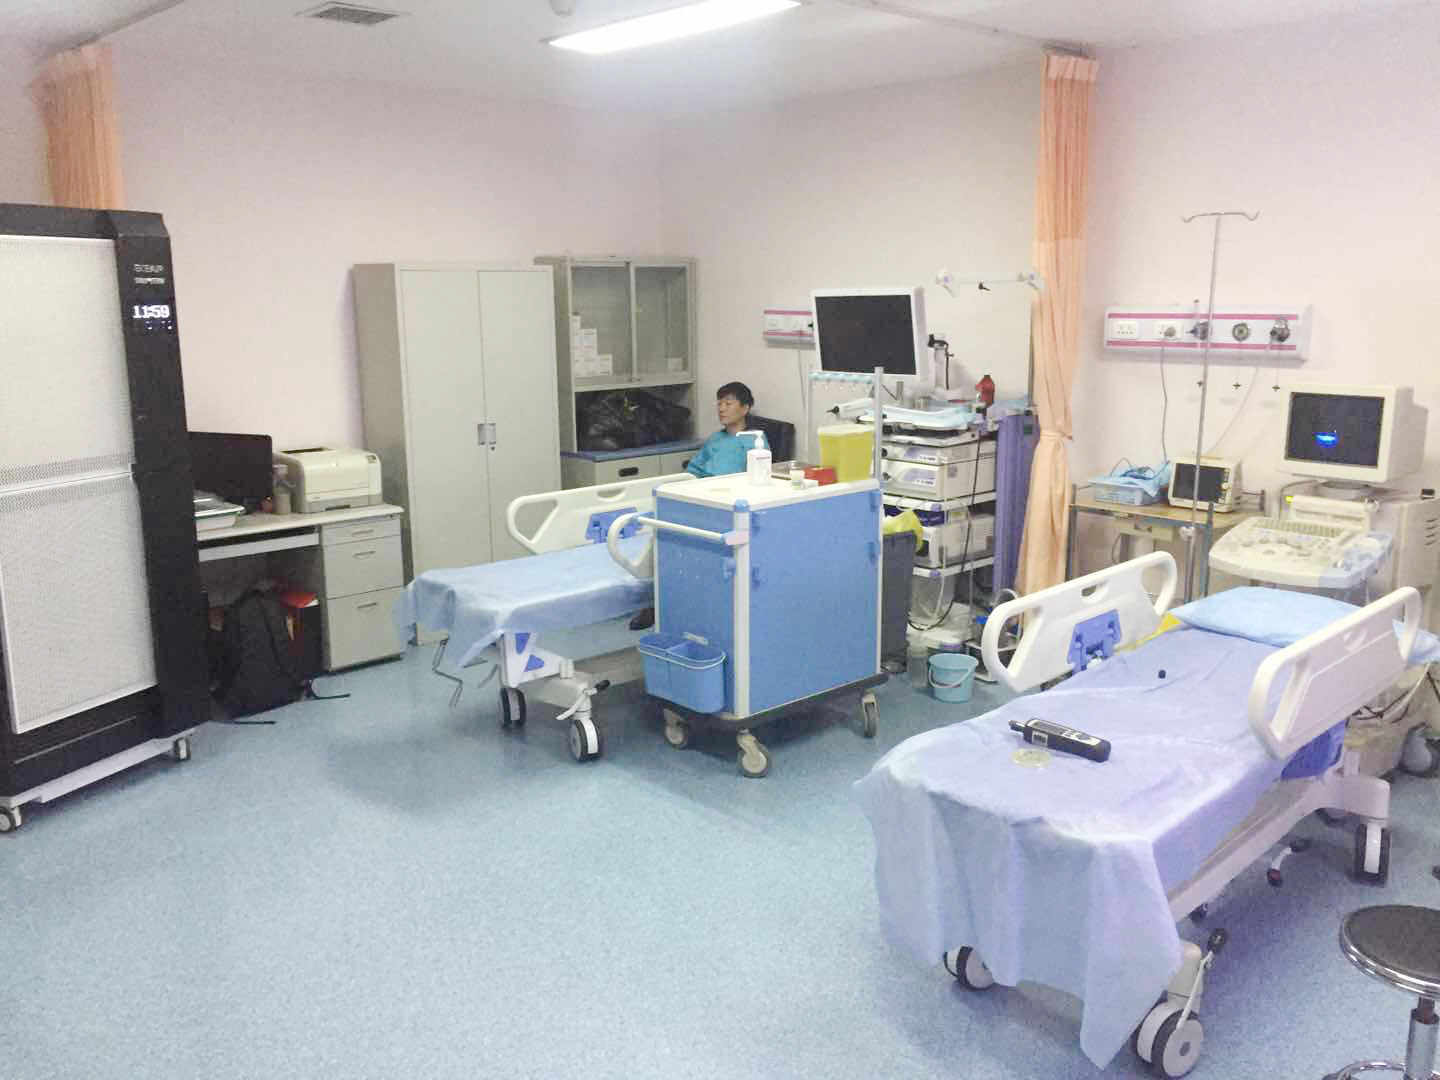 آخرین مورد شرکت موسسه و بیمارستان سرطان دانشگاه پزشکی تیانجین